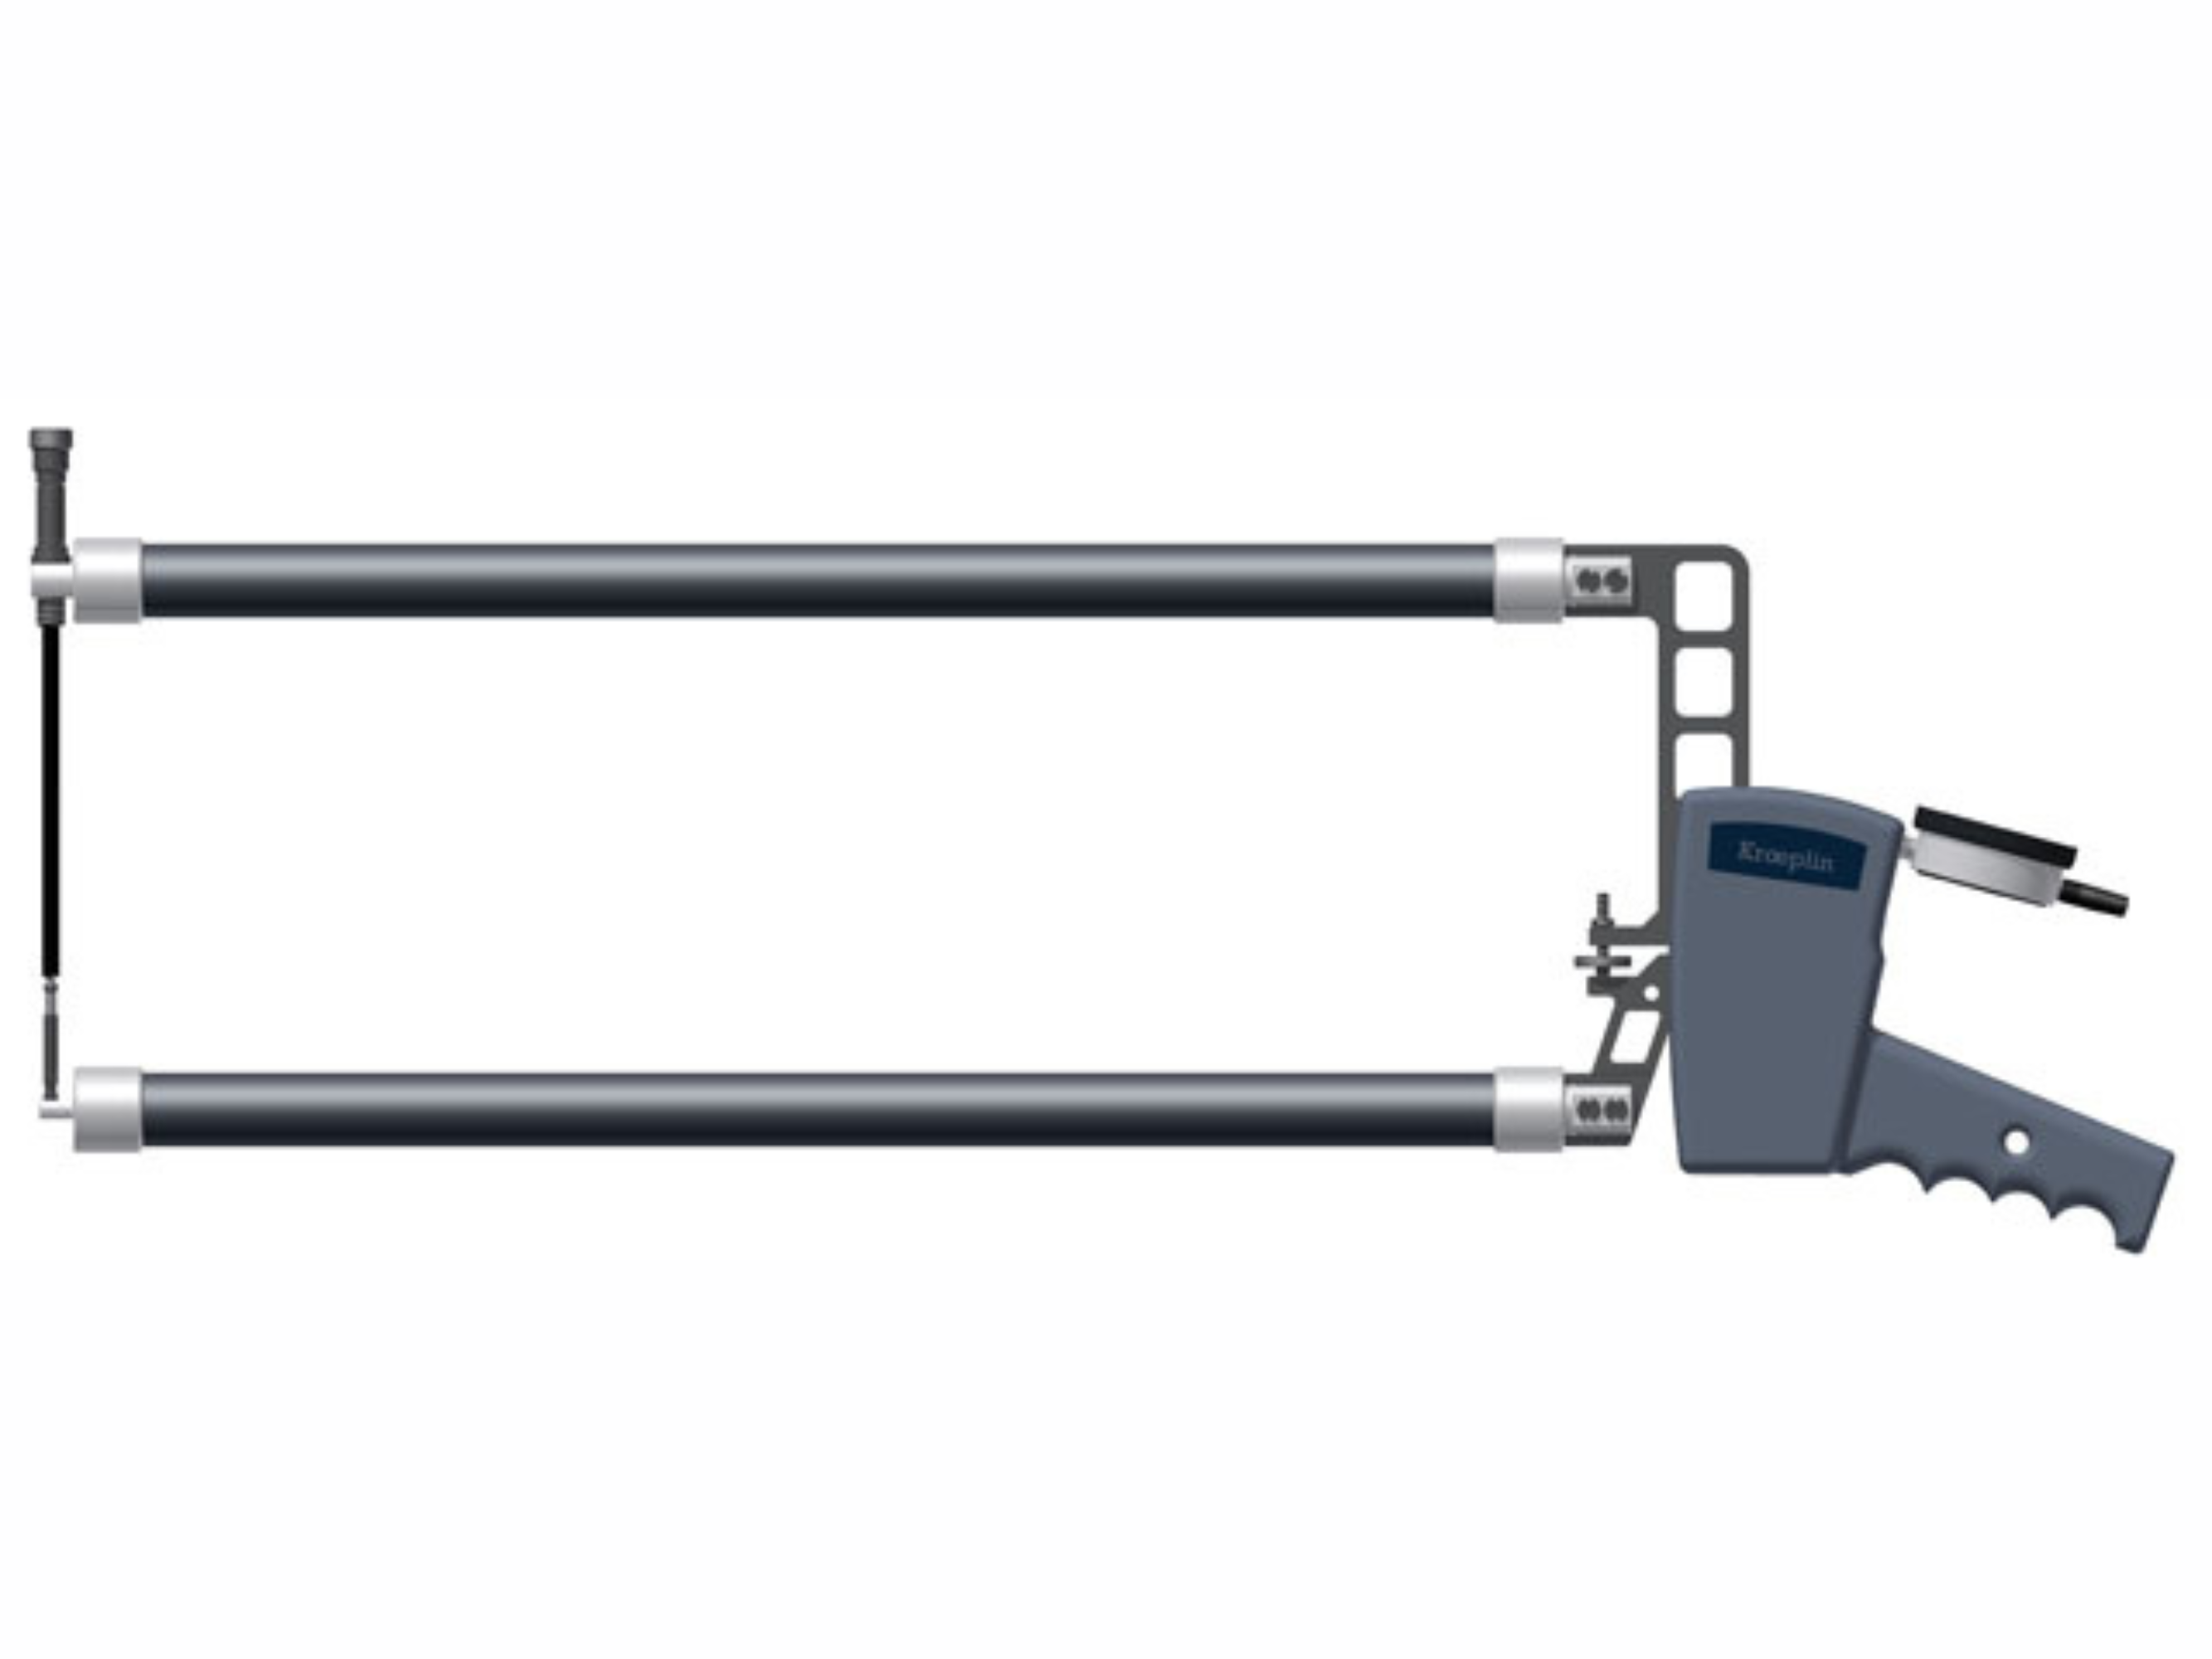 Digital External Caliper Gauge 0-100mm, 0.1mm D12100BJ